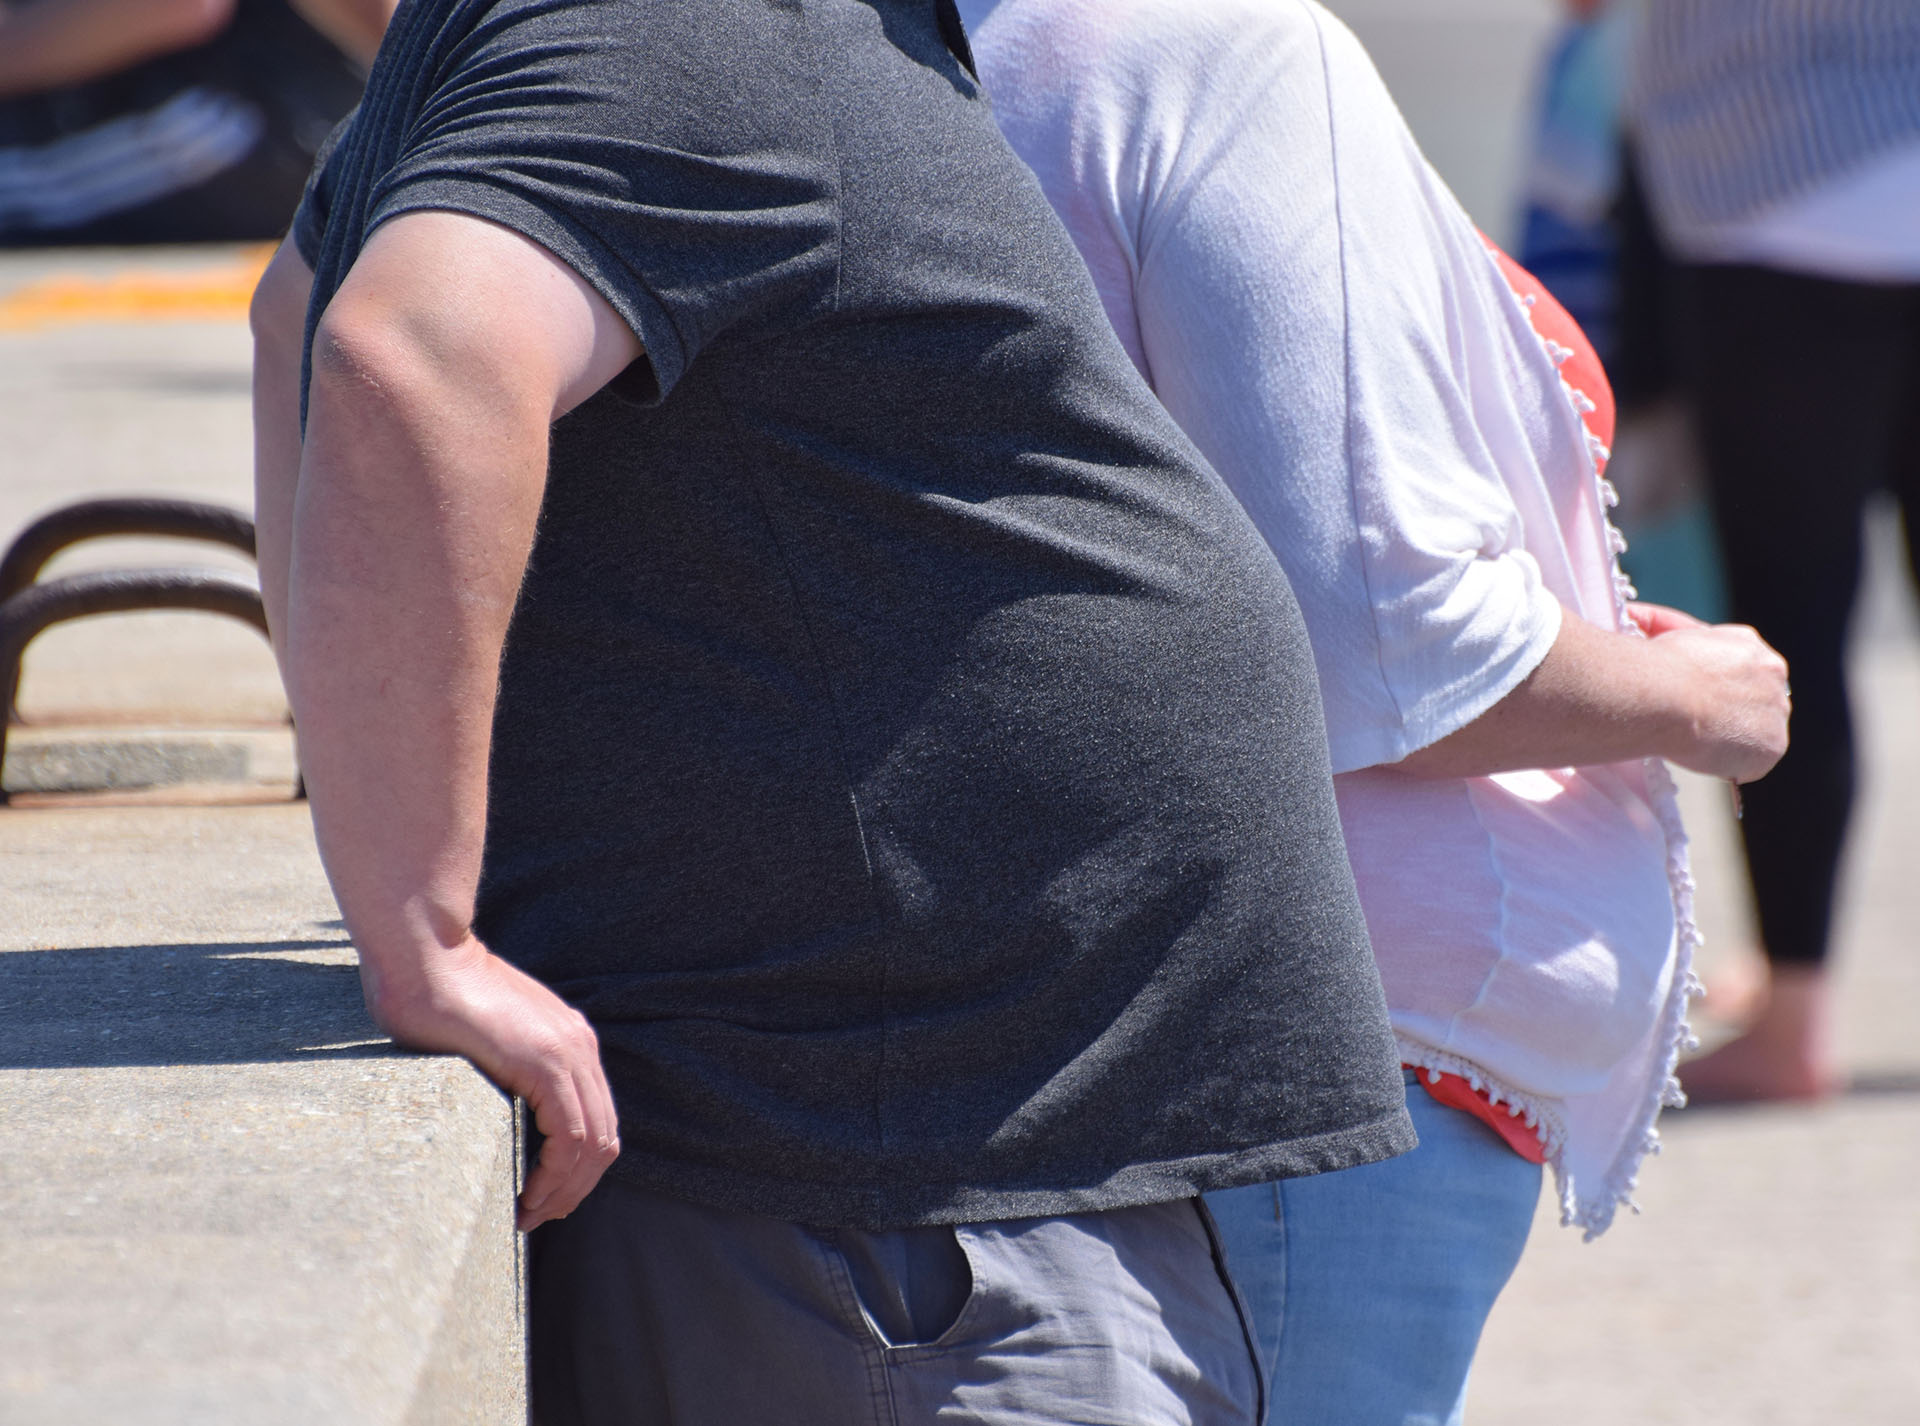 Según la OMS, la obesidad es una pandemia de tipo no infeccioso, causante, antes del aislamiento, de 2,8 millones de muertes anuales por enfermedades relacionadas (Shutterstock)